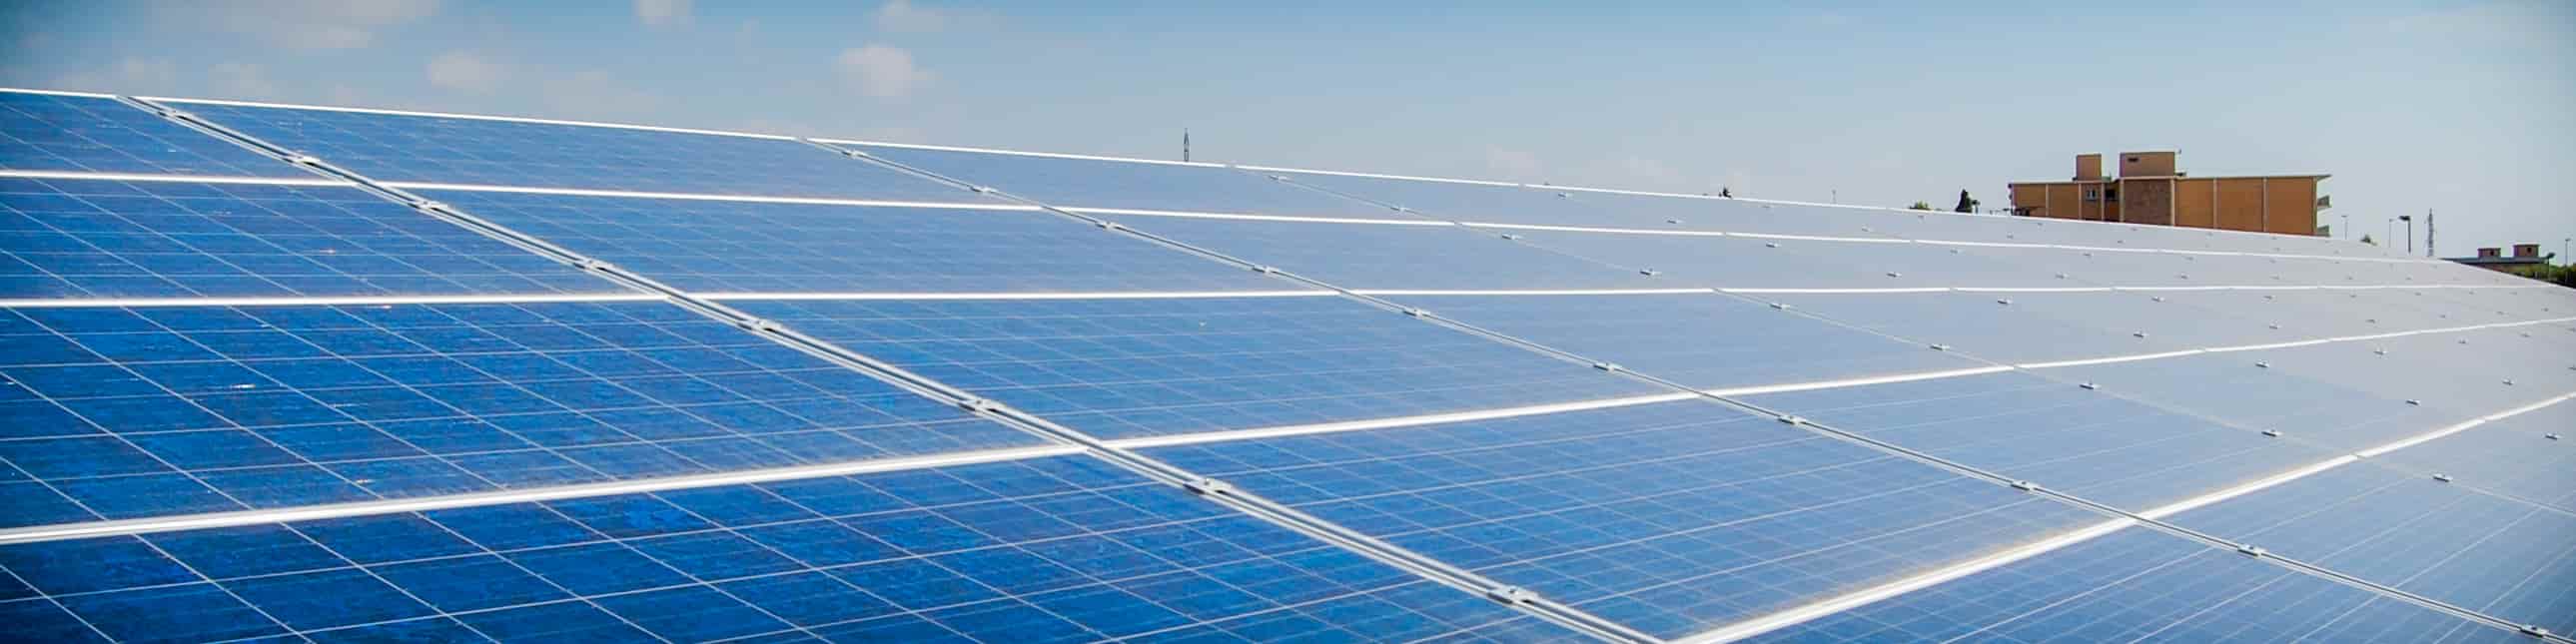 La UMU instalará una gran planta fotovoltaica en el Campus de Espinardo